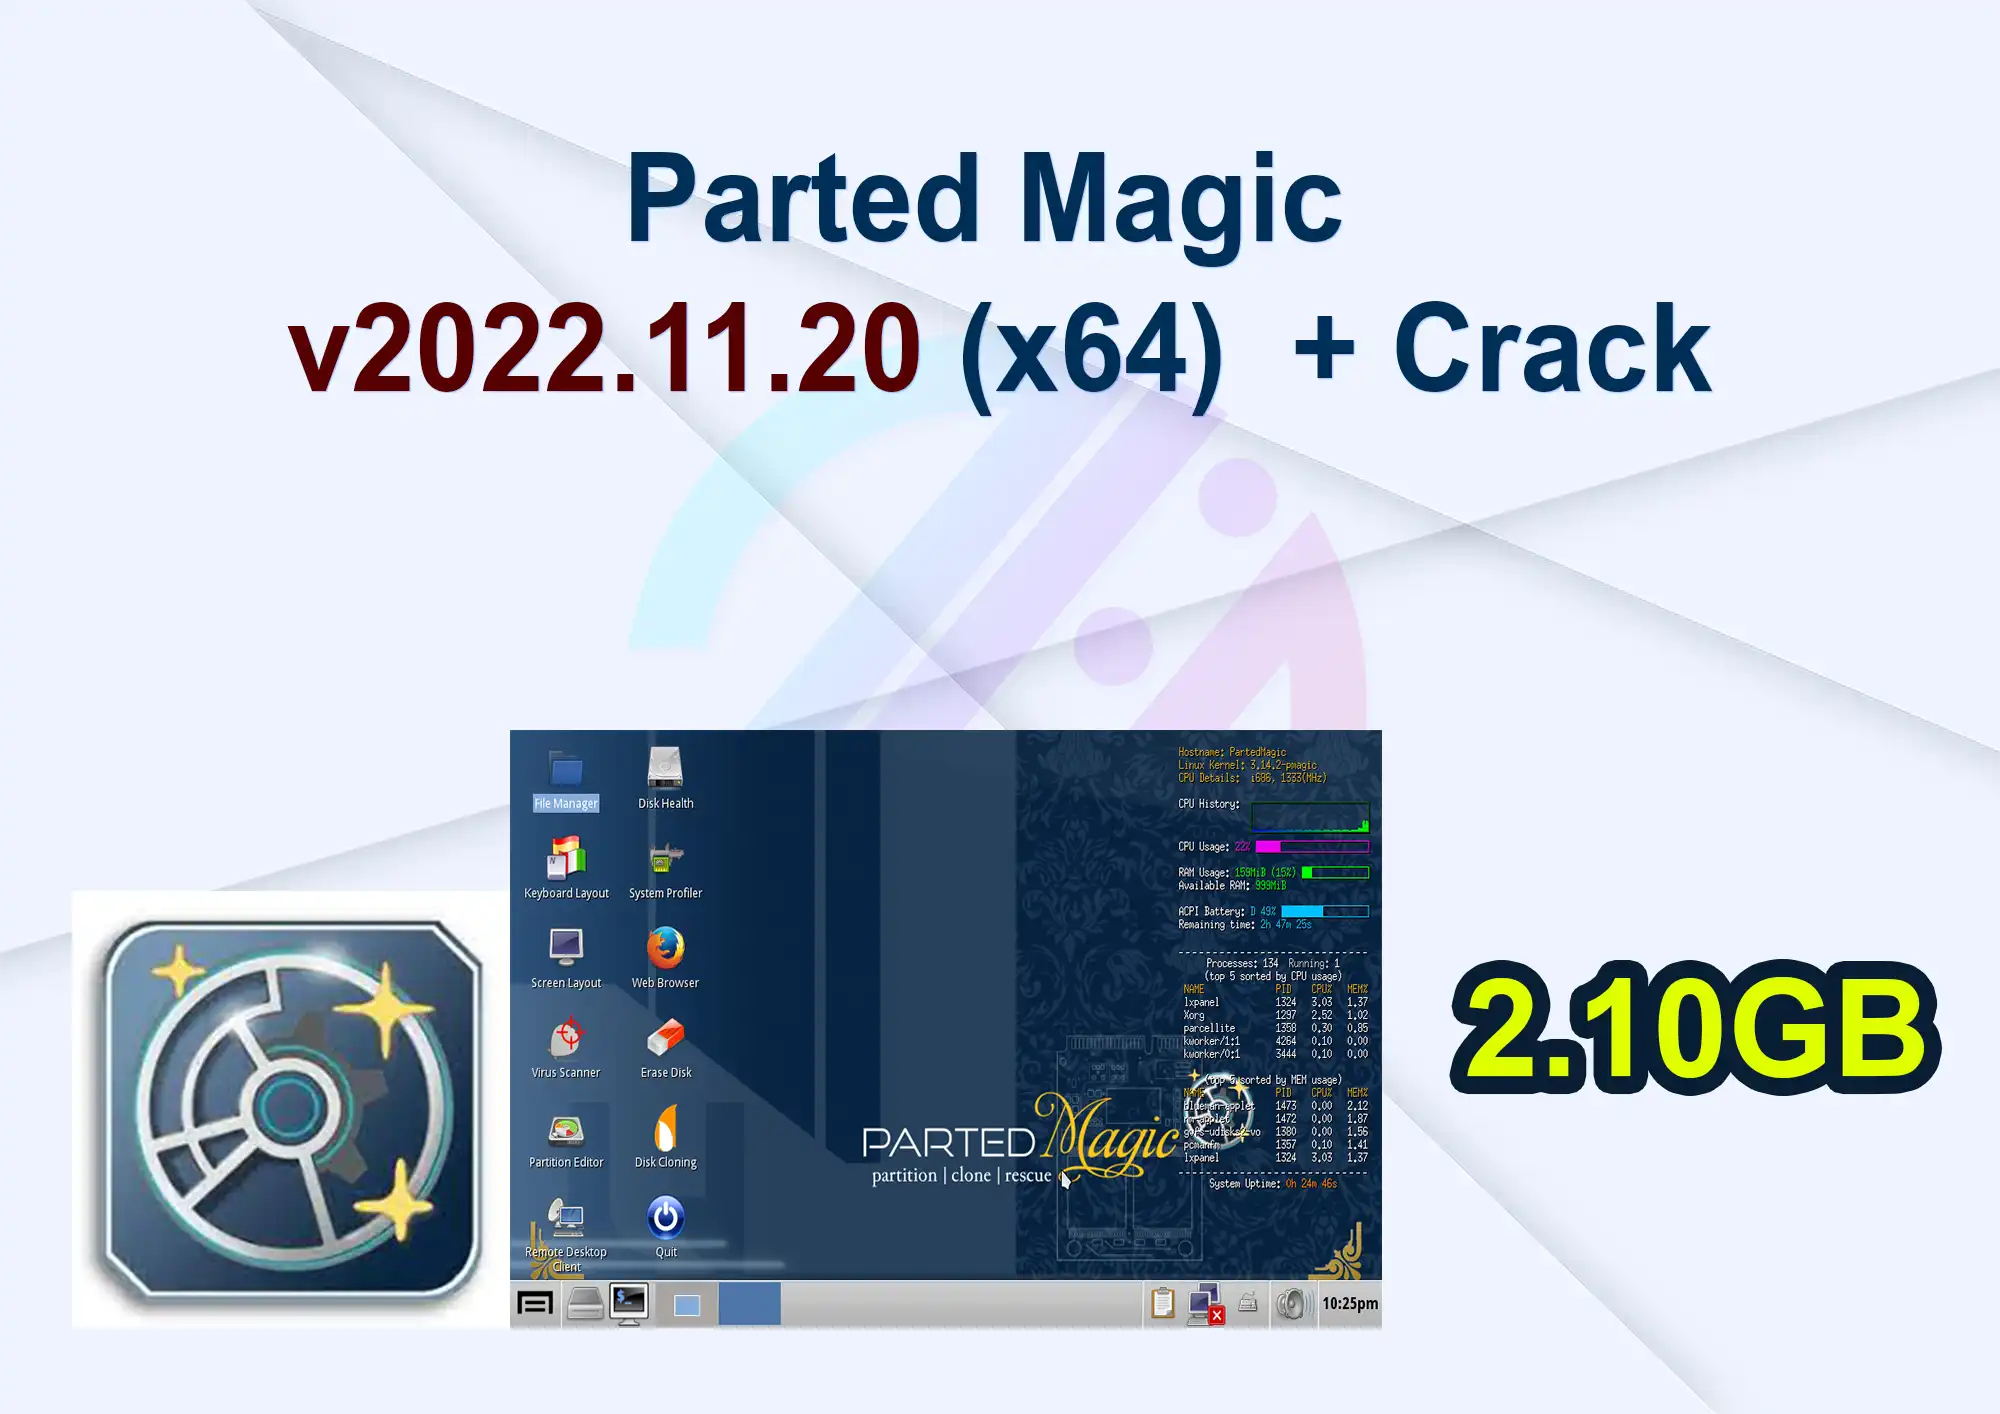 Parted Magic v2022.11.20 (x64) + Crack